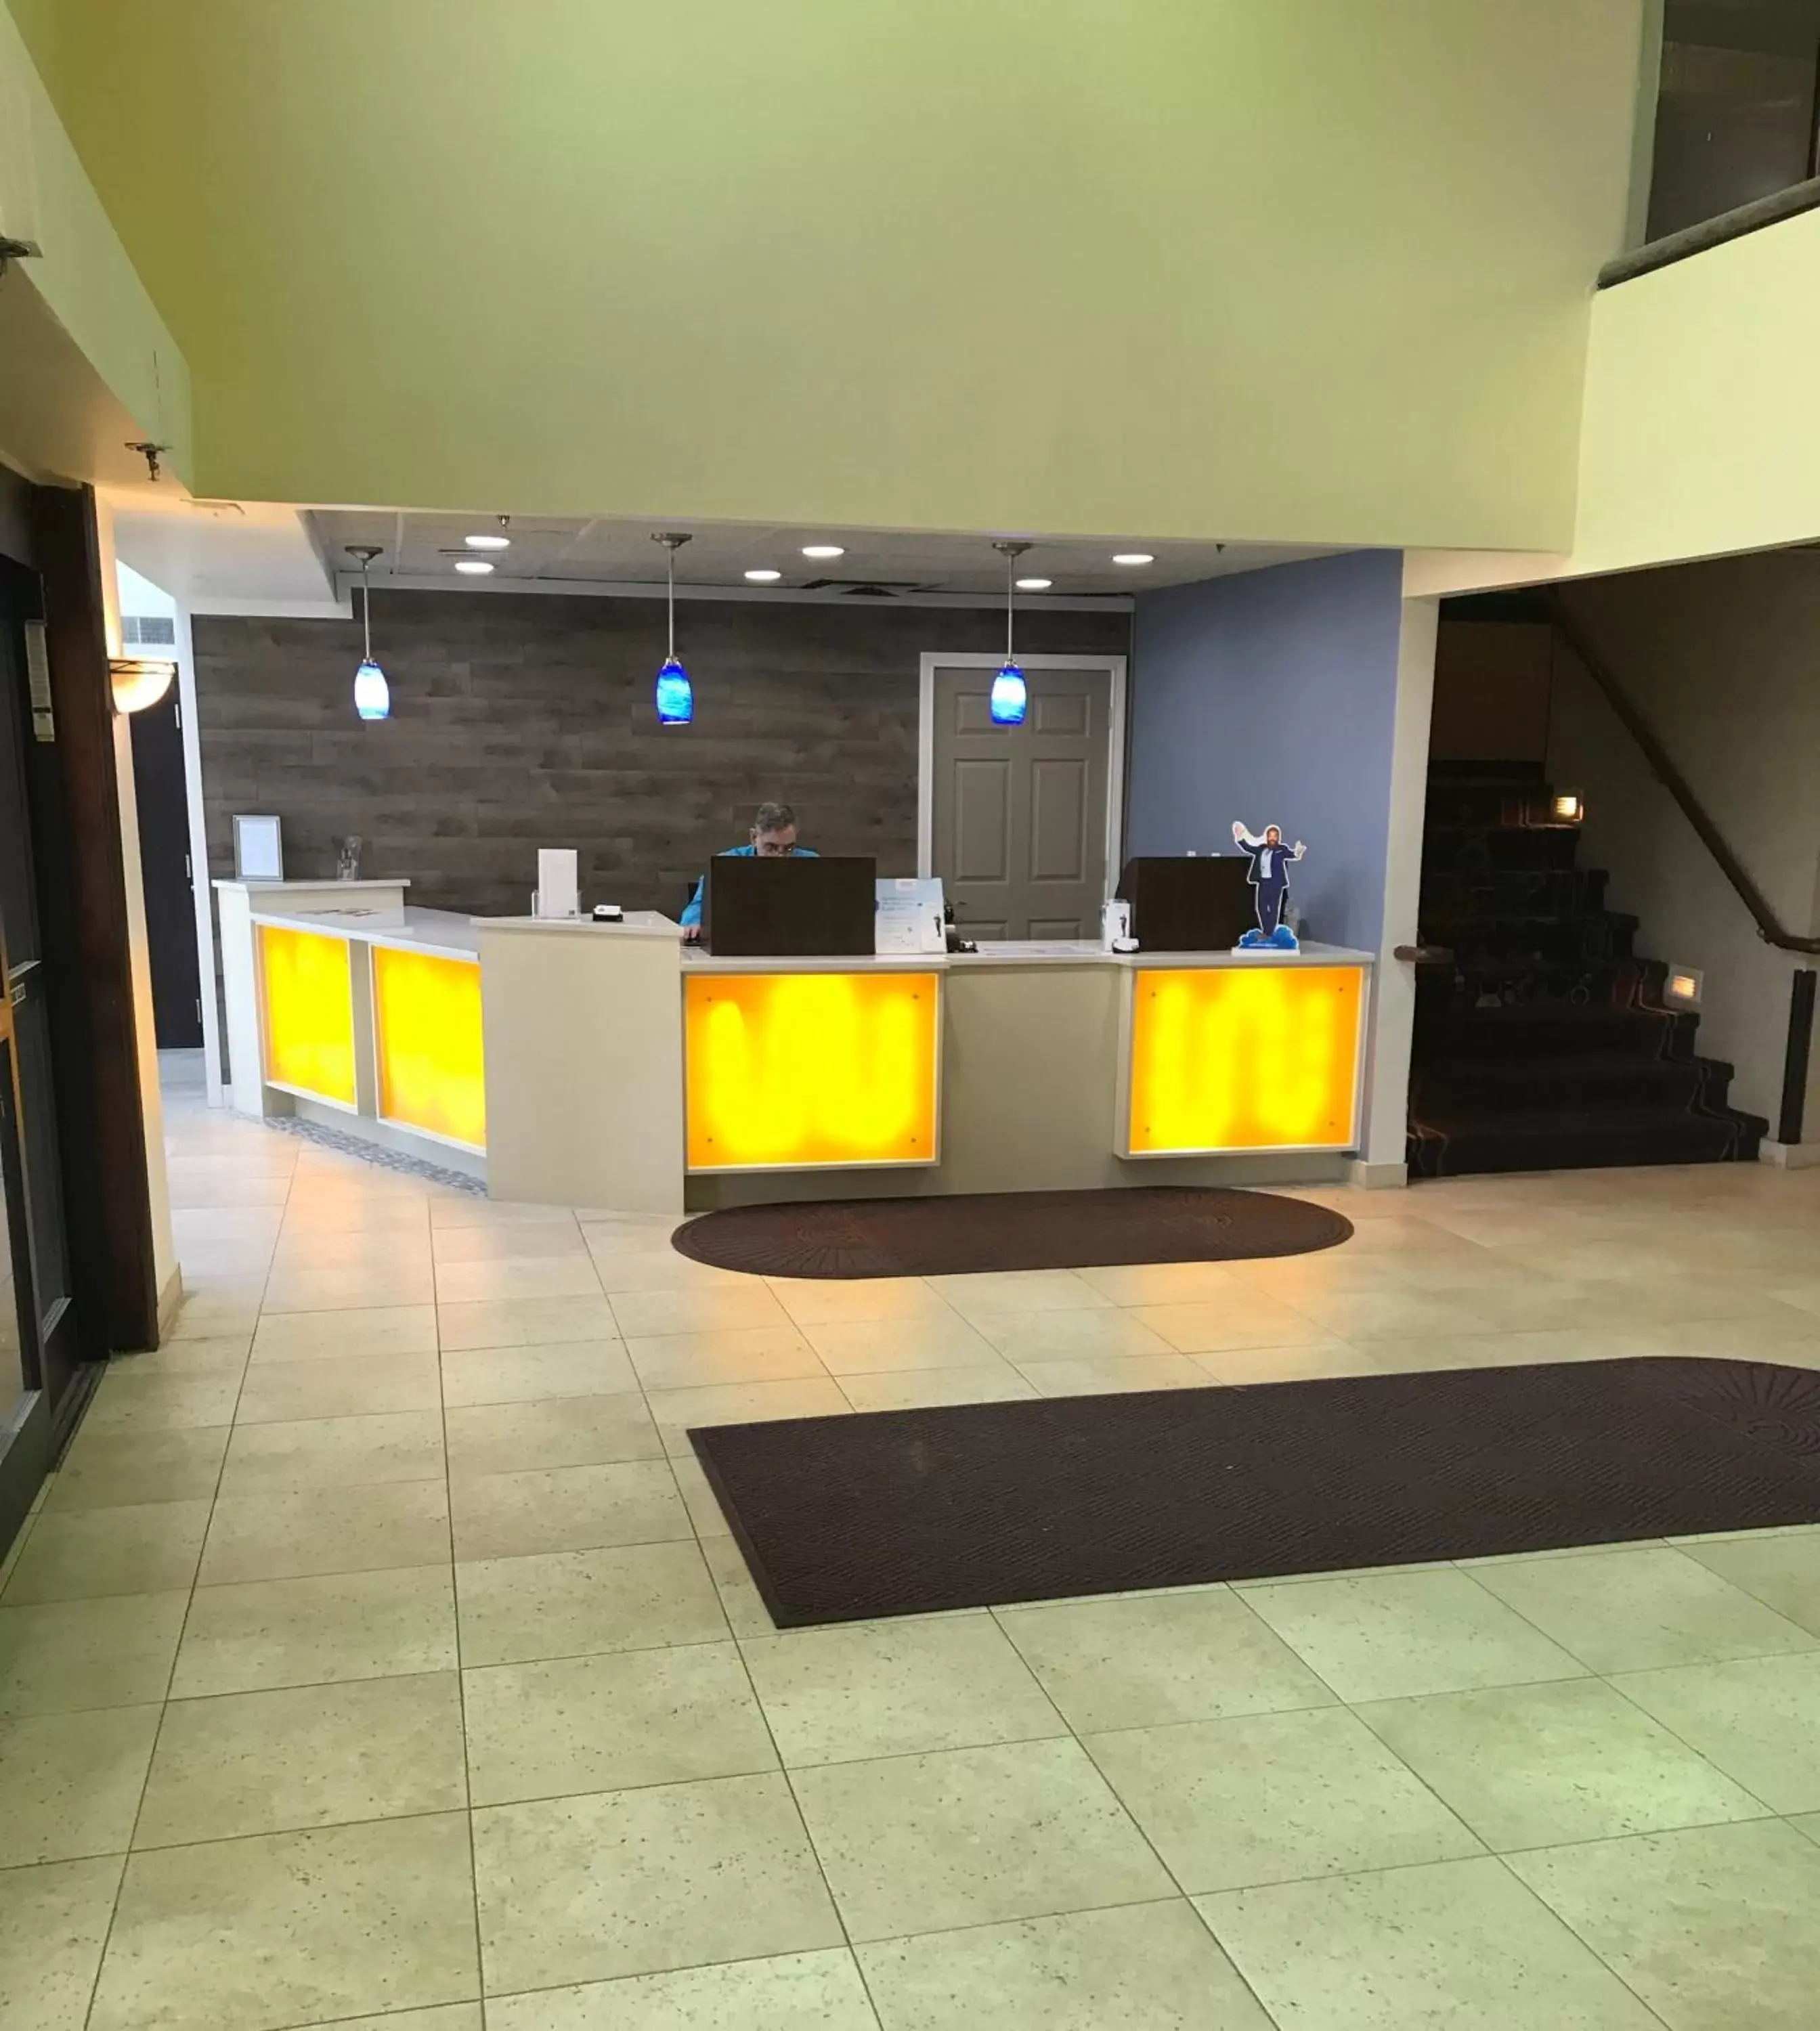 Lobby or reception, Lobby/Reception in Days Inn & Suites by Wyndham Rochester Hills MI